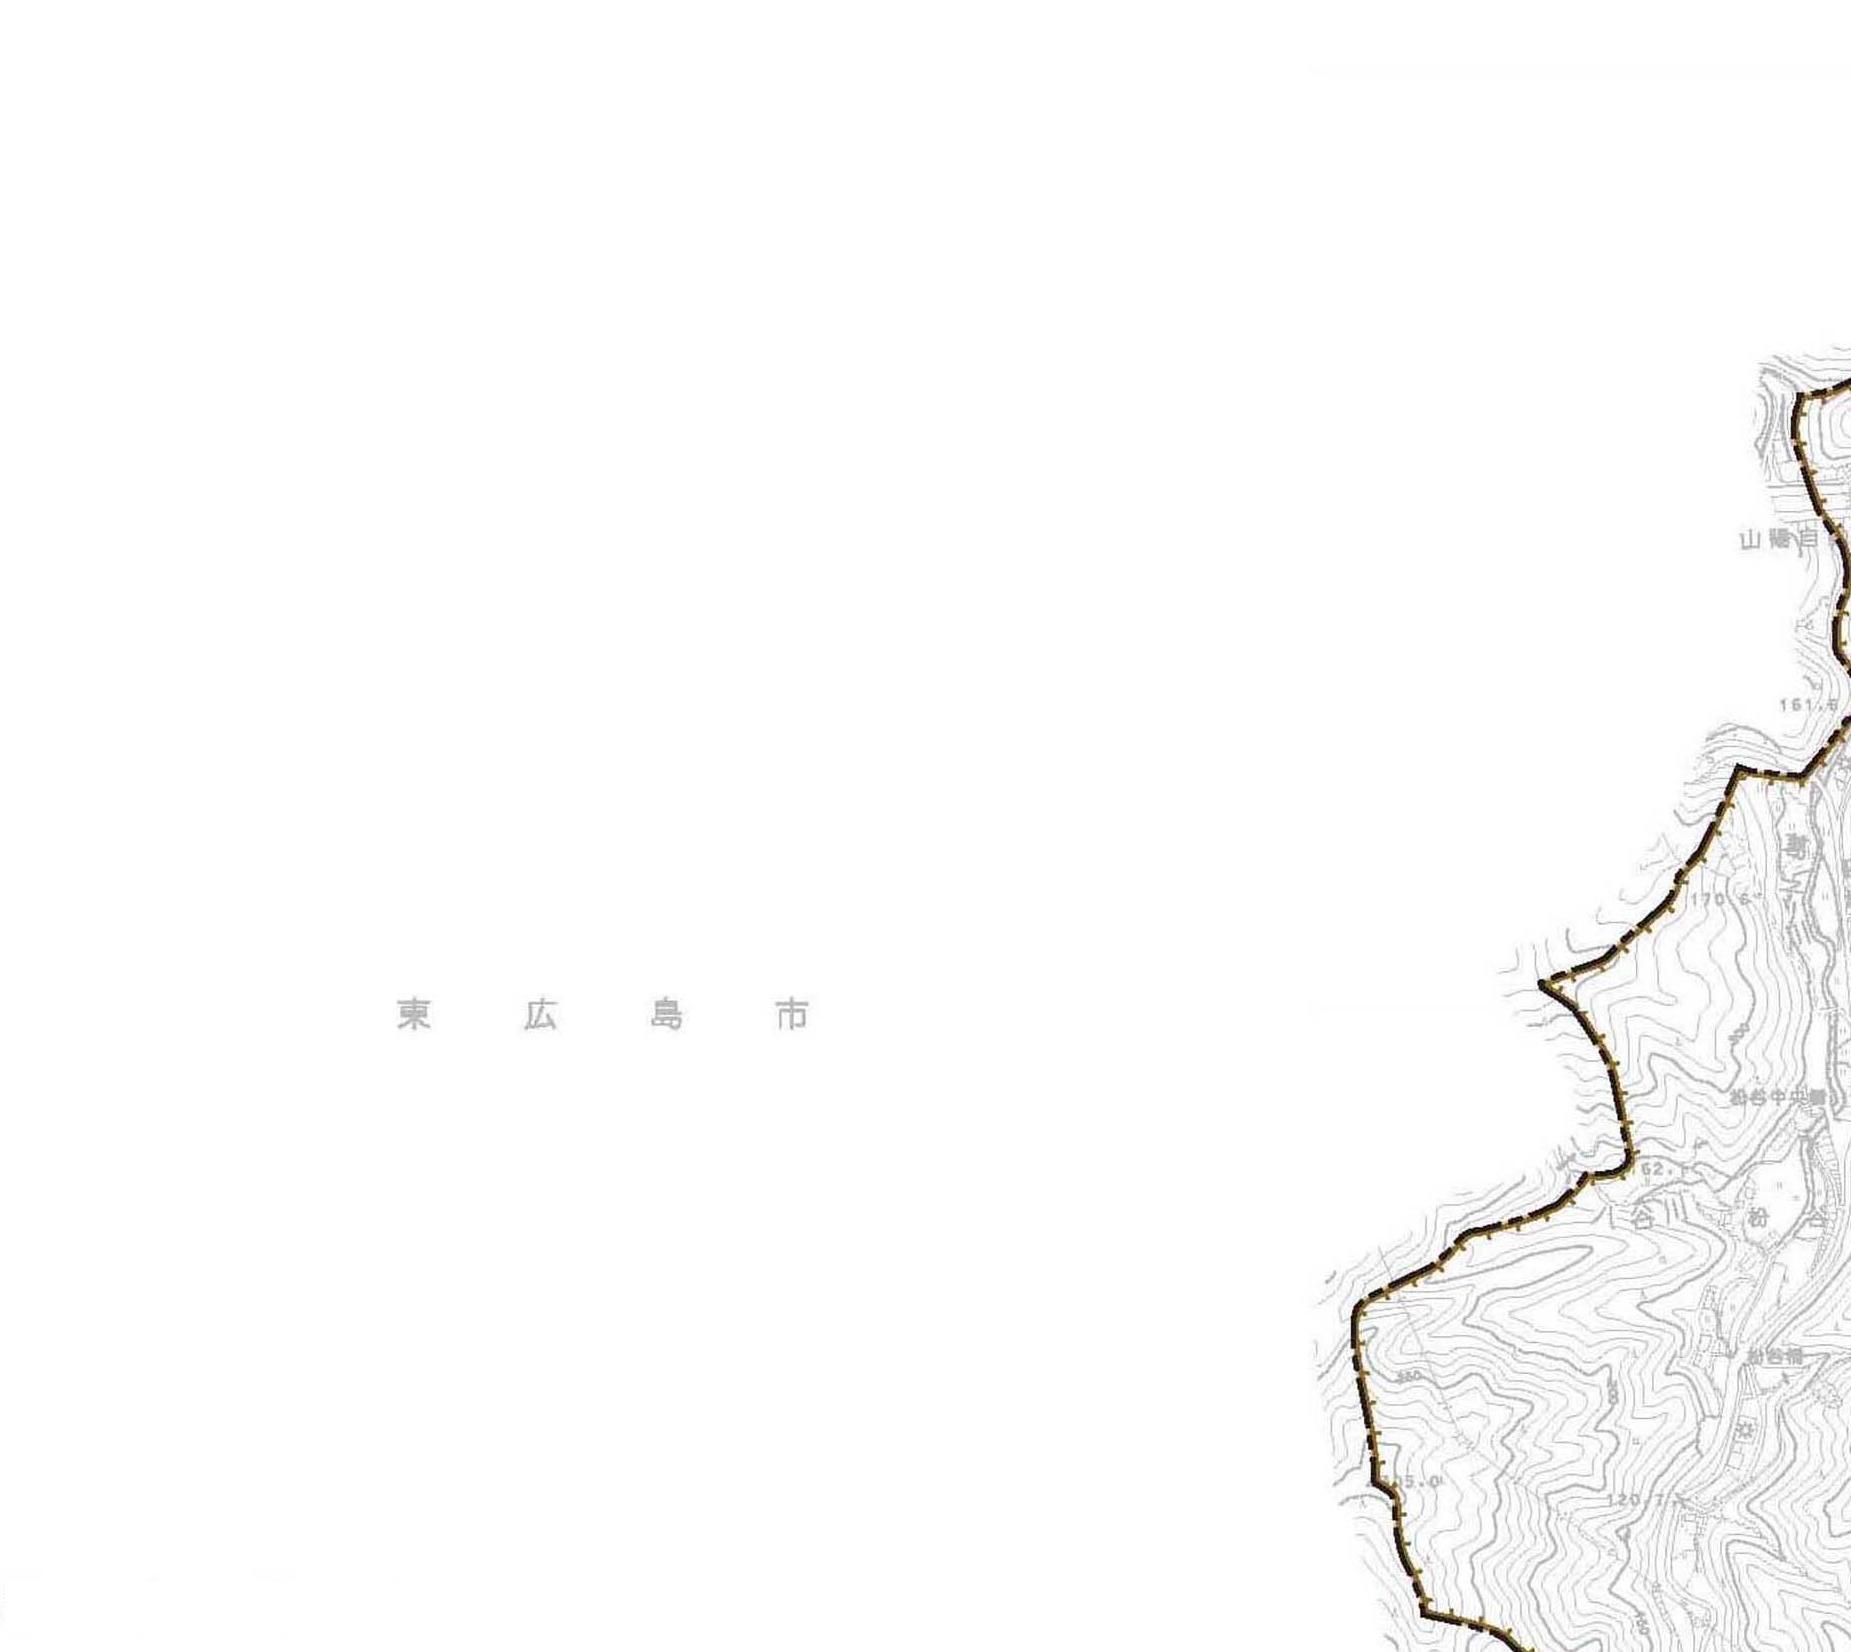 都市計画図e01の地図画像